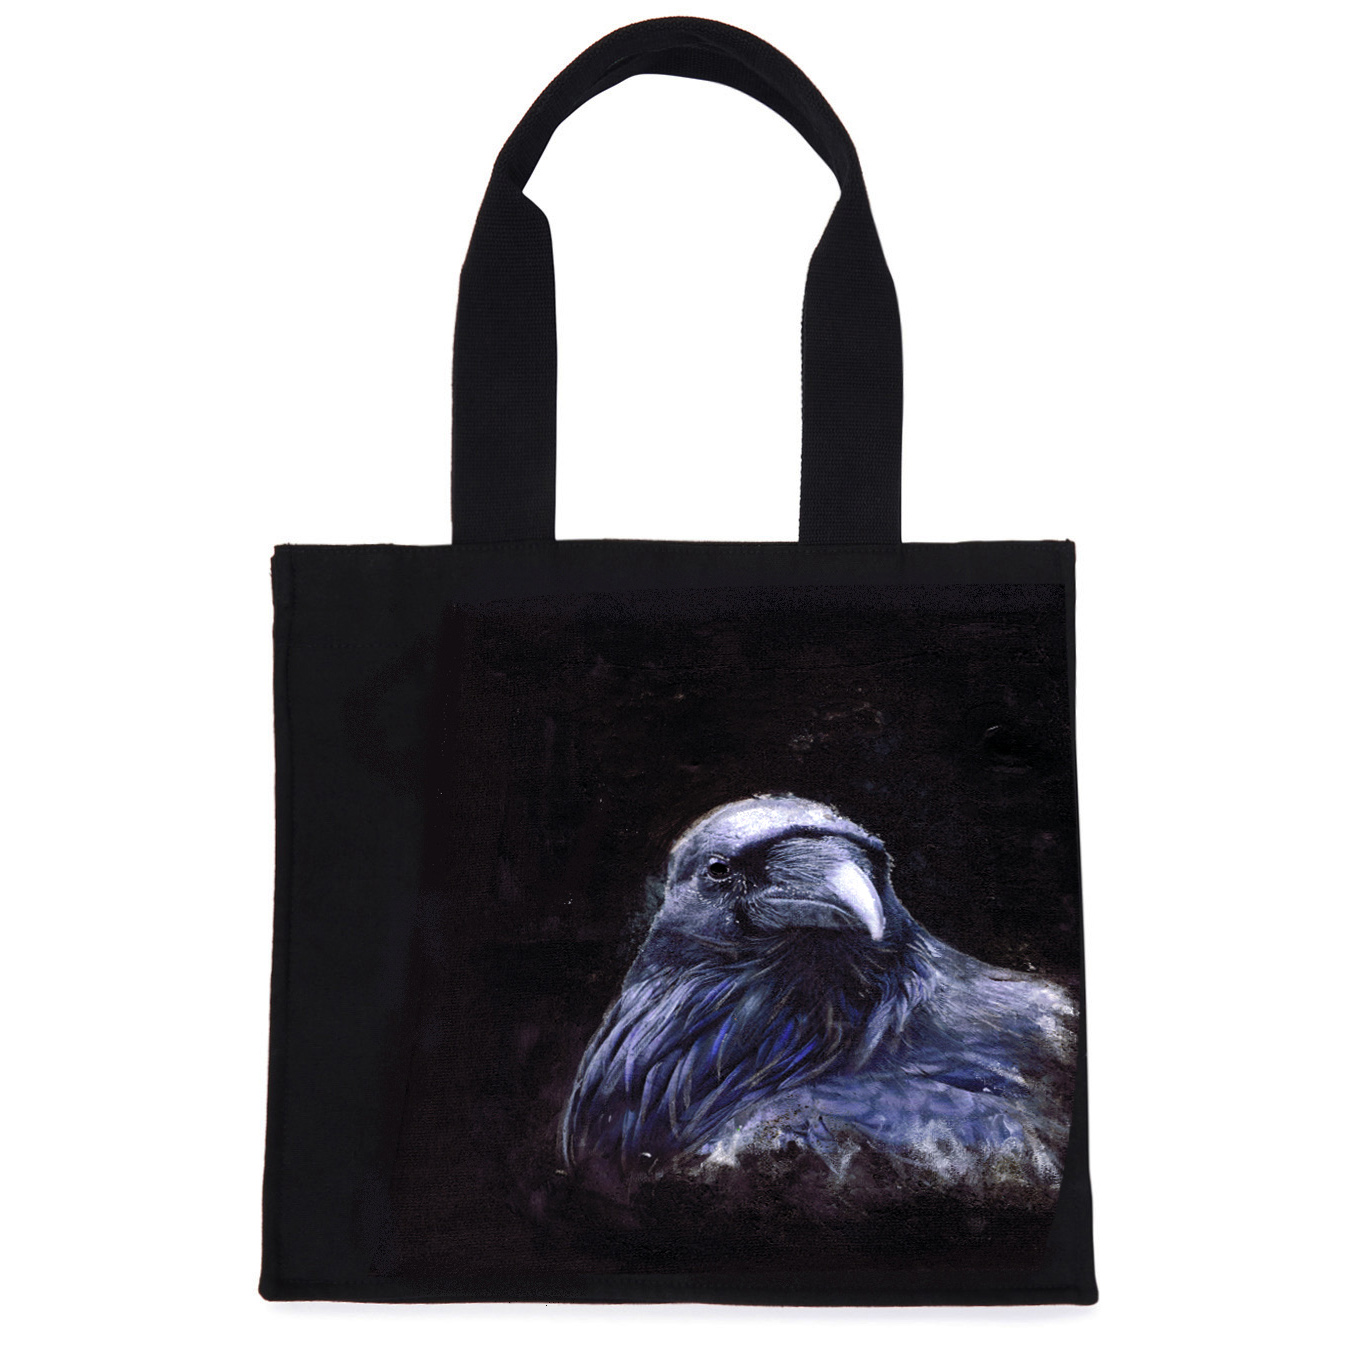 Raven Tote Bag by Kelly Hood